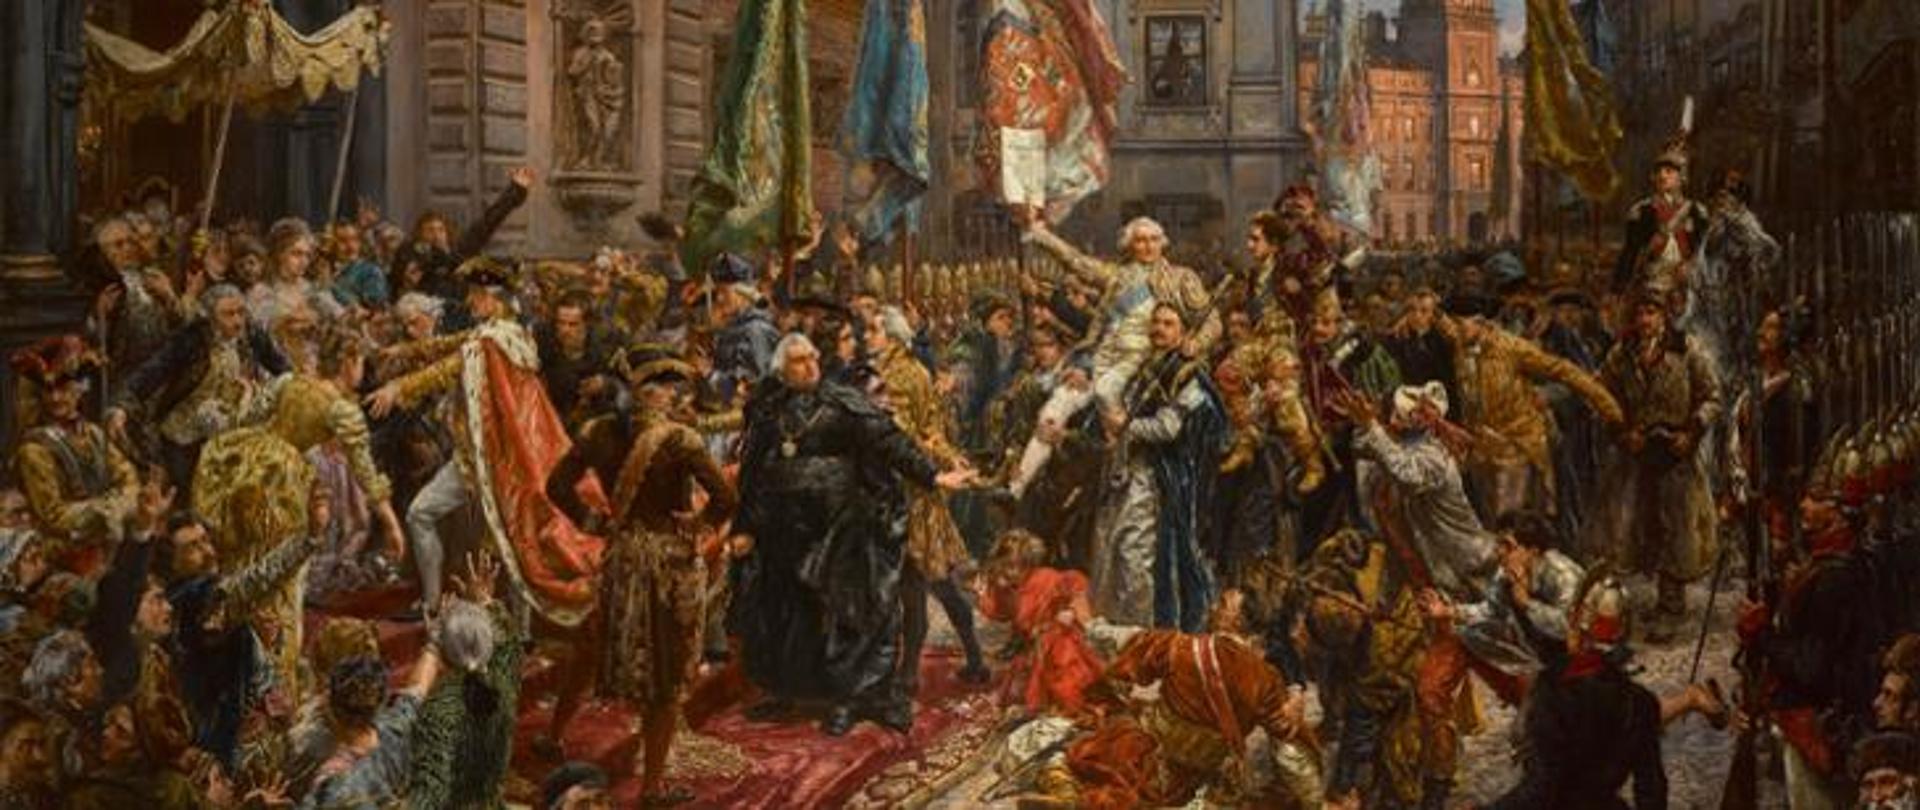 Ustawa Rządowa była pierwszą polską konstytucją i jednocześnie jedną z pierwszych konstytucji na świecie uchwalonych w sposób w pełni demokratyczny. 